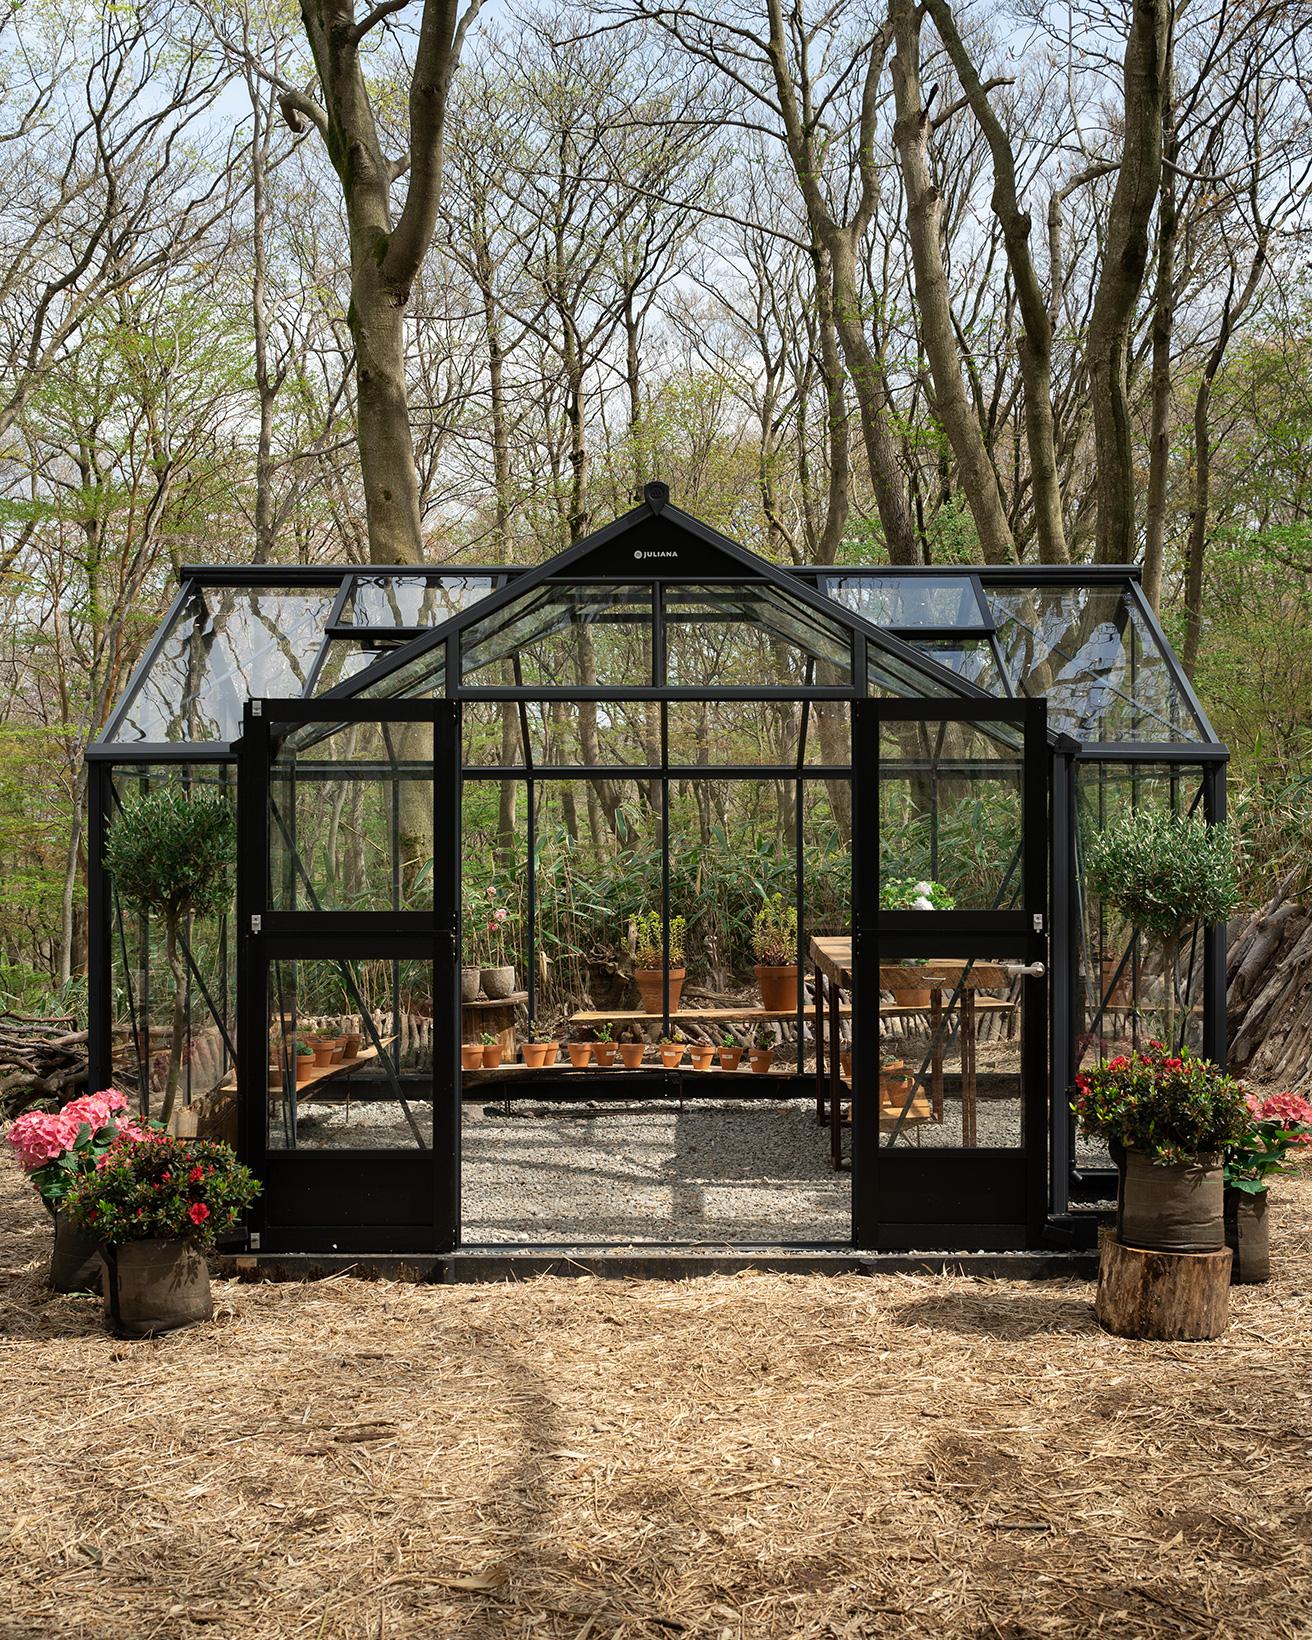 パピリオンと呼ばれるガラス製の温室を巡りながら散策を楽しむ。写真の〈ショップパビリオン〉では、厳選したガーデングッズや花の苗などを販売予定。